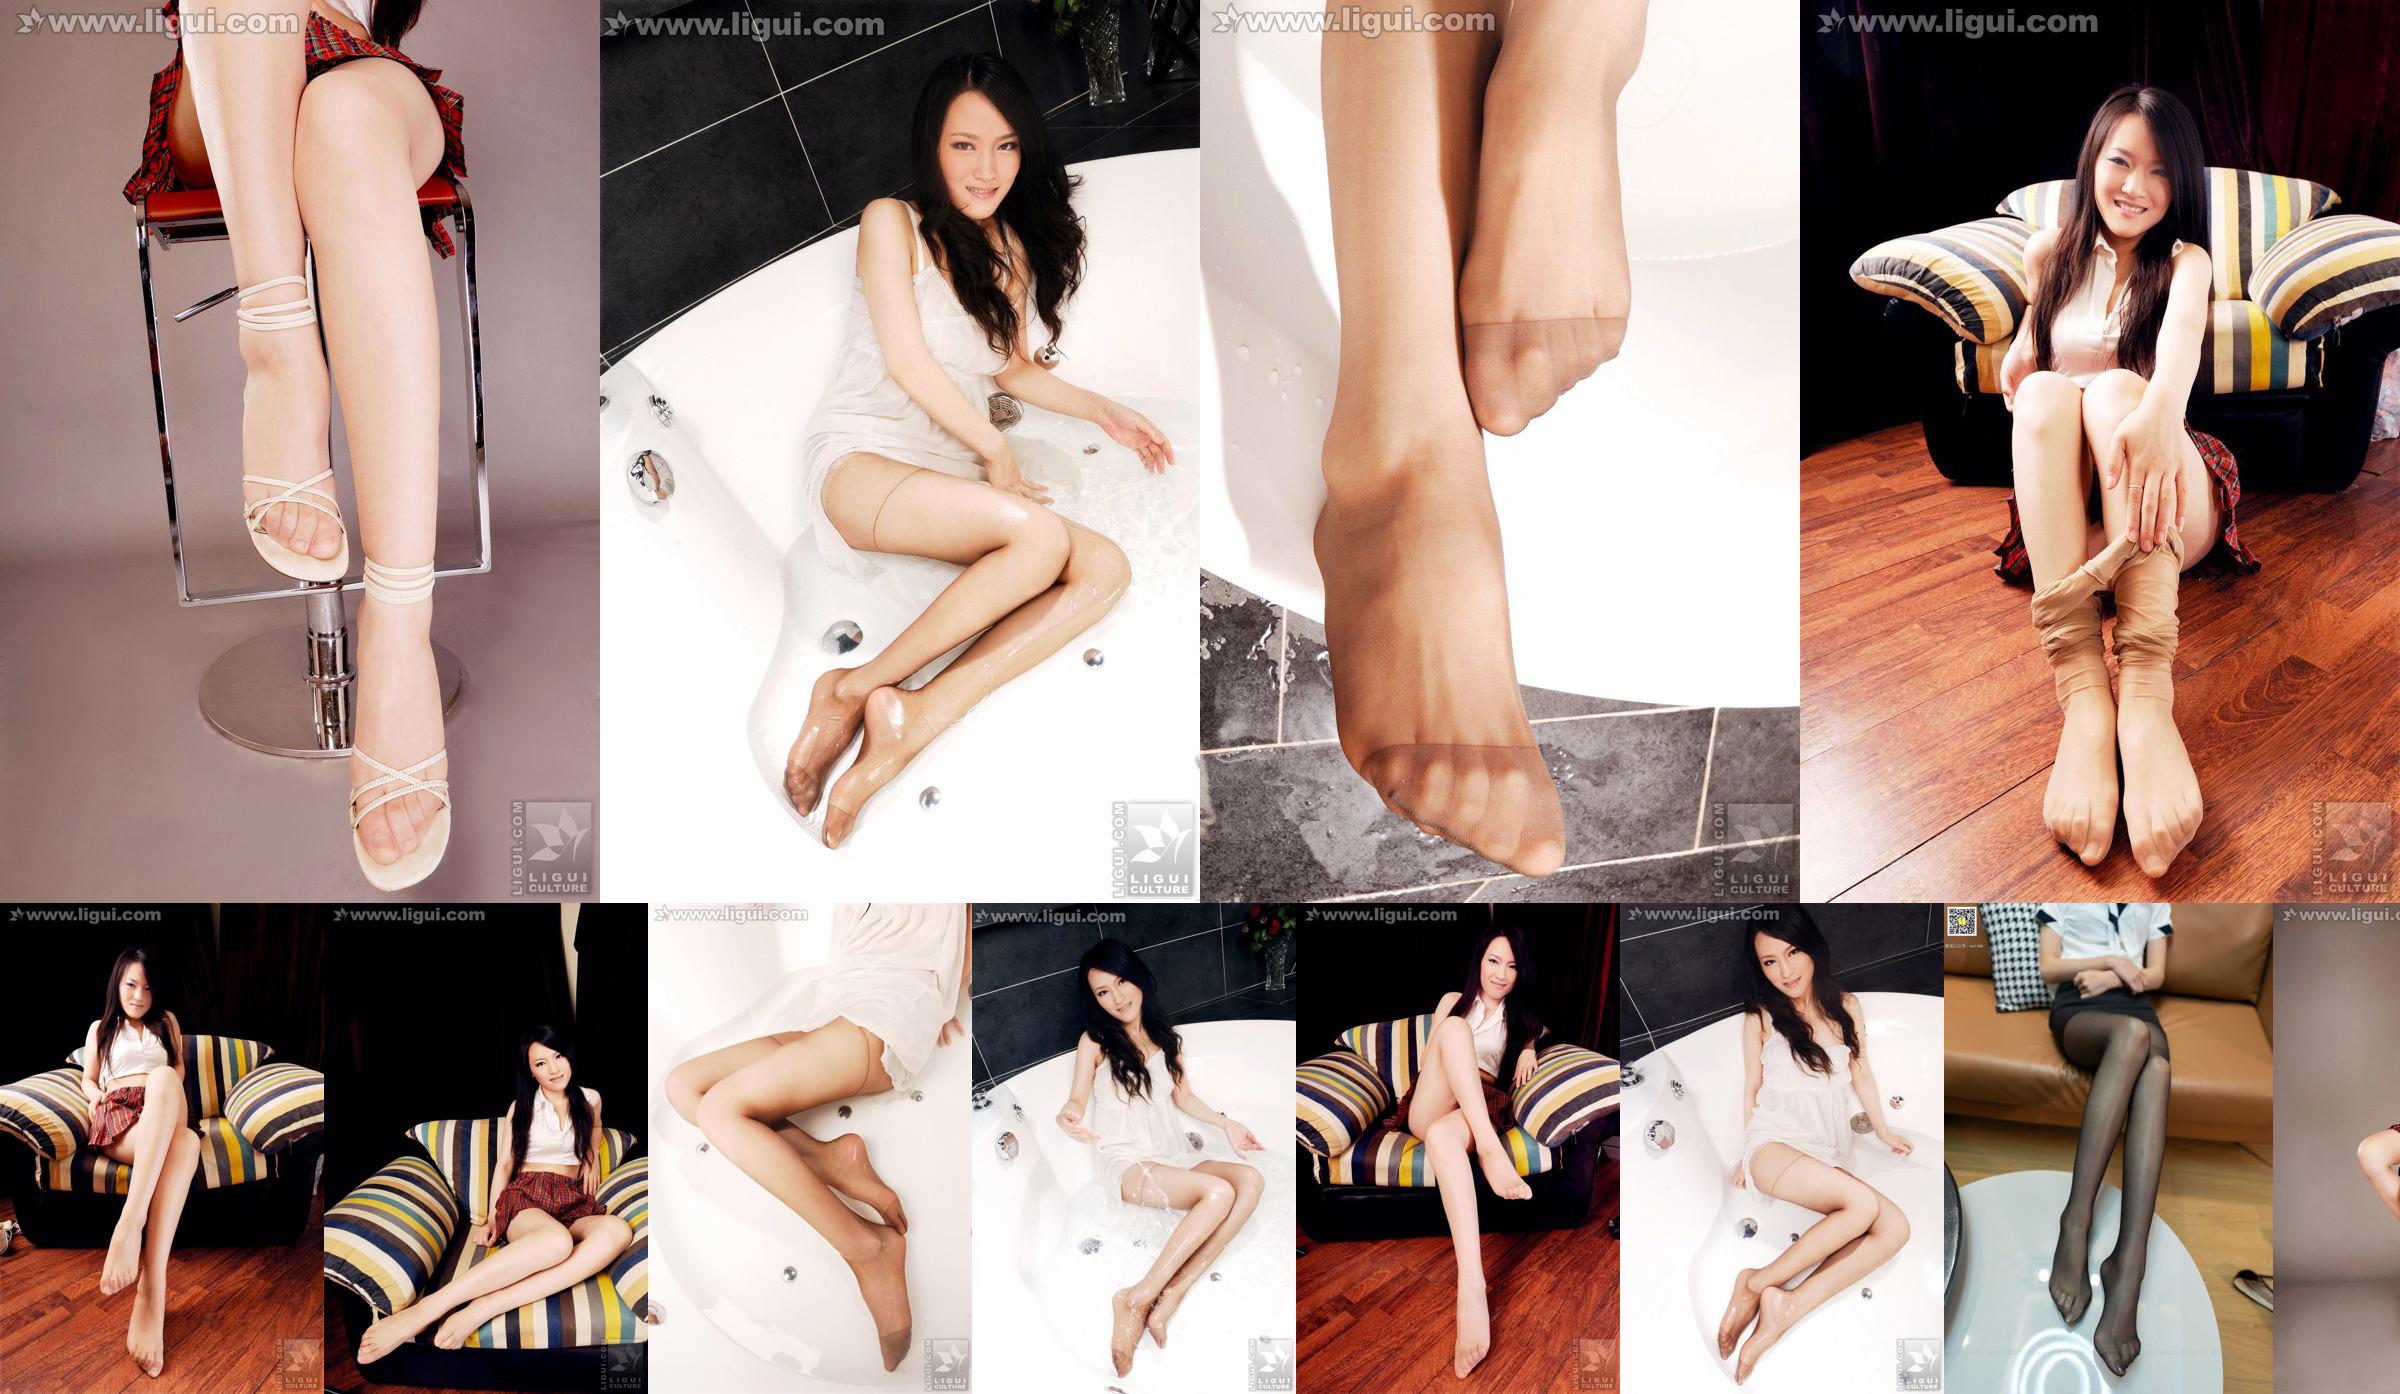 Modelo Wen Ting "Meias de carne doces e fofas com salto alto" [丽 柜 LiGui] Foto de belas pernas e pés de jade No.0e1778 Página 4